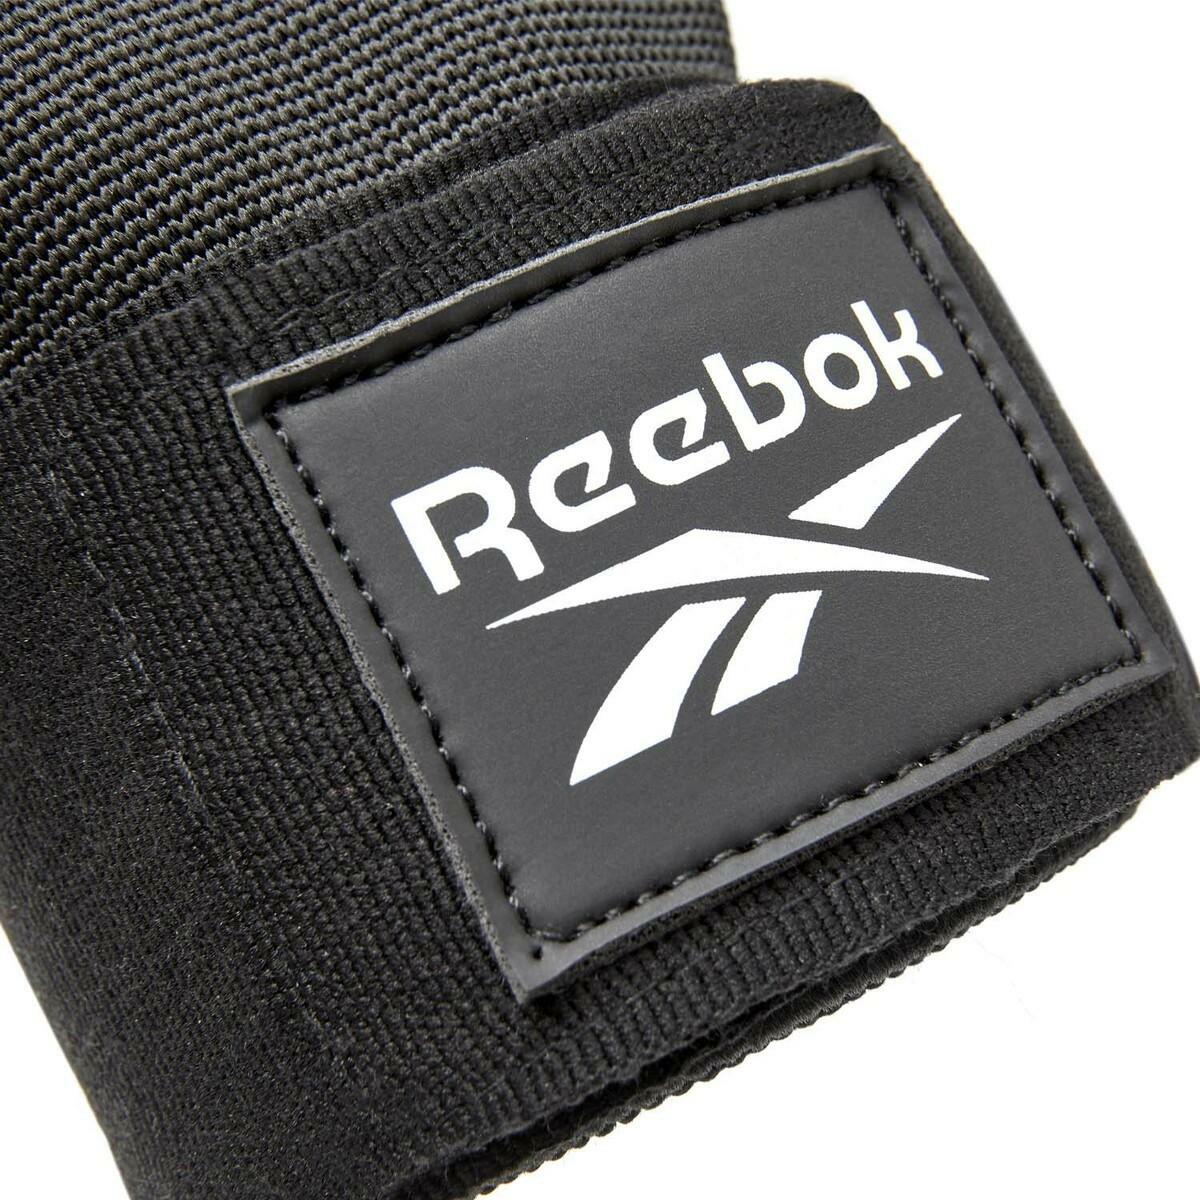 Reebok Pro Quick Hand Wraps Black RSCB-103BK